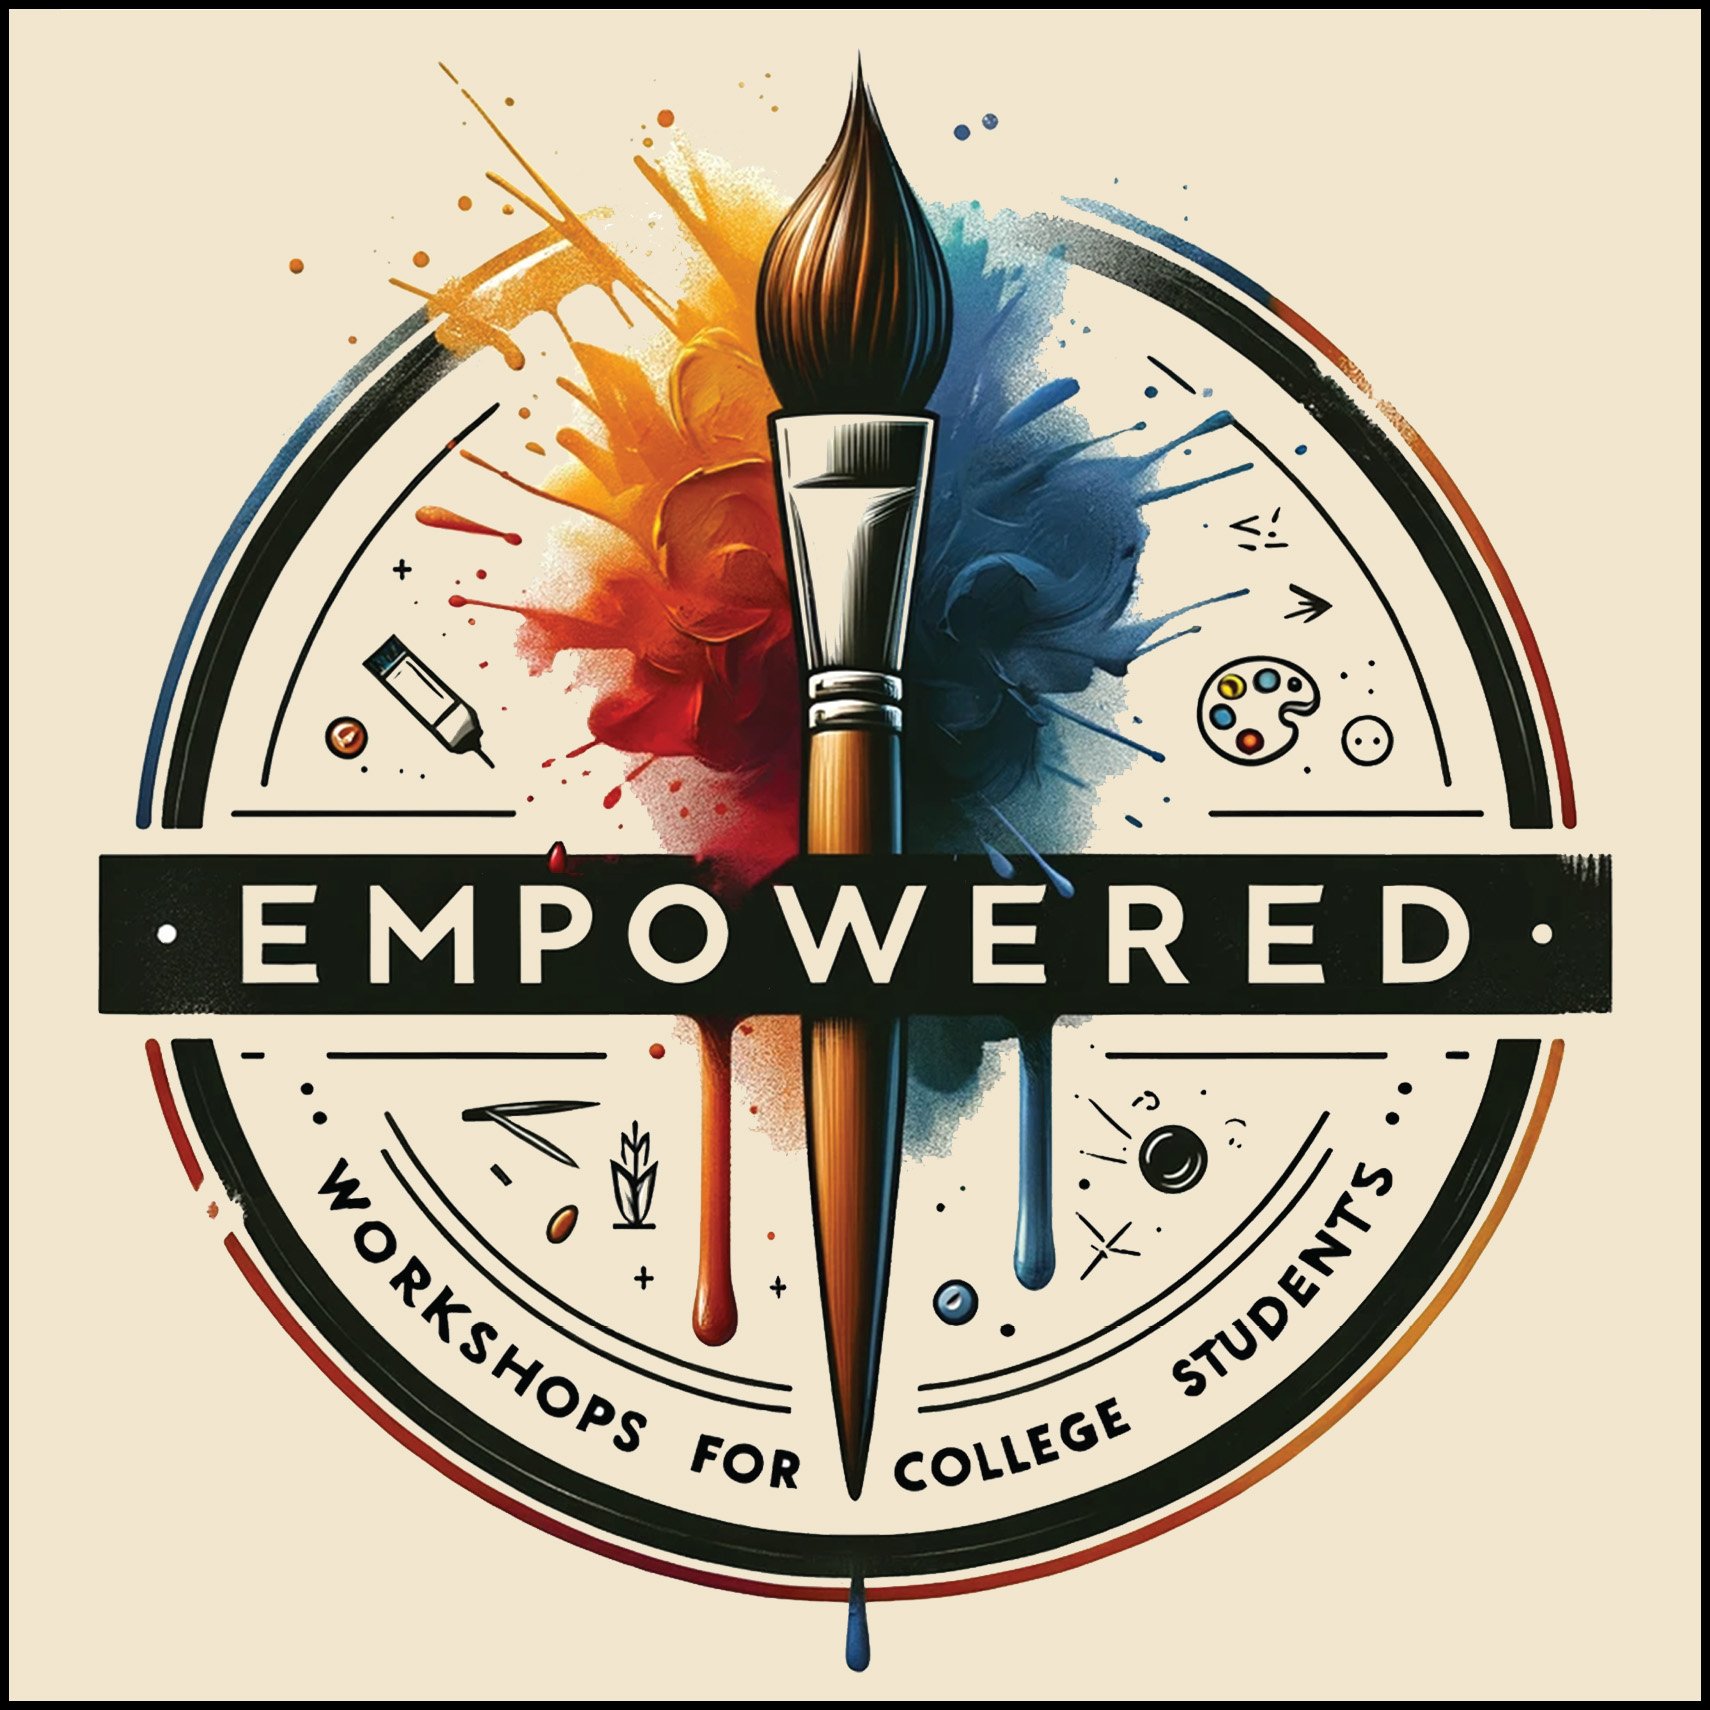 Empowered_Workshops.jpg